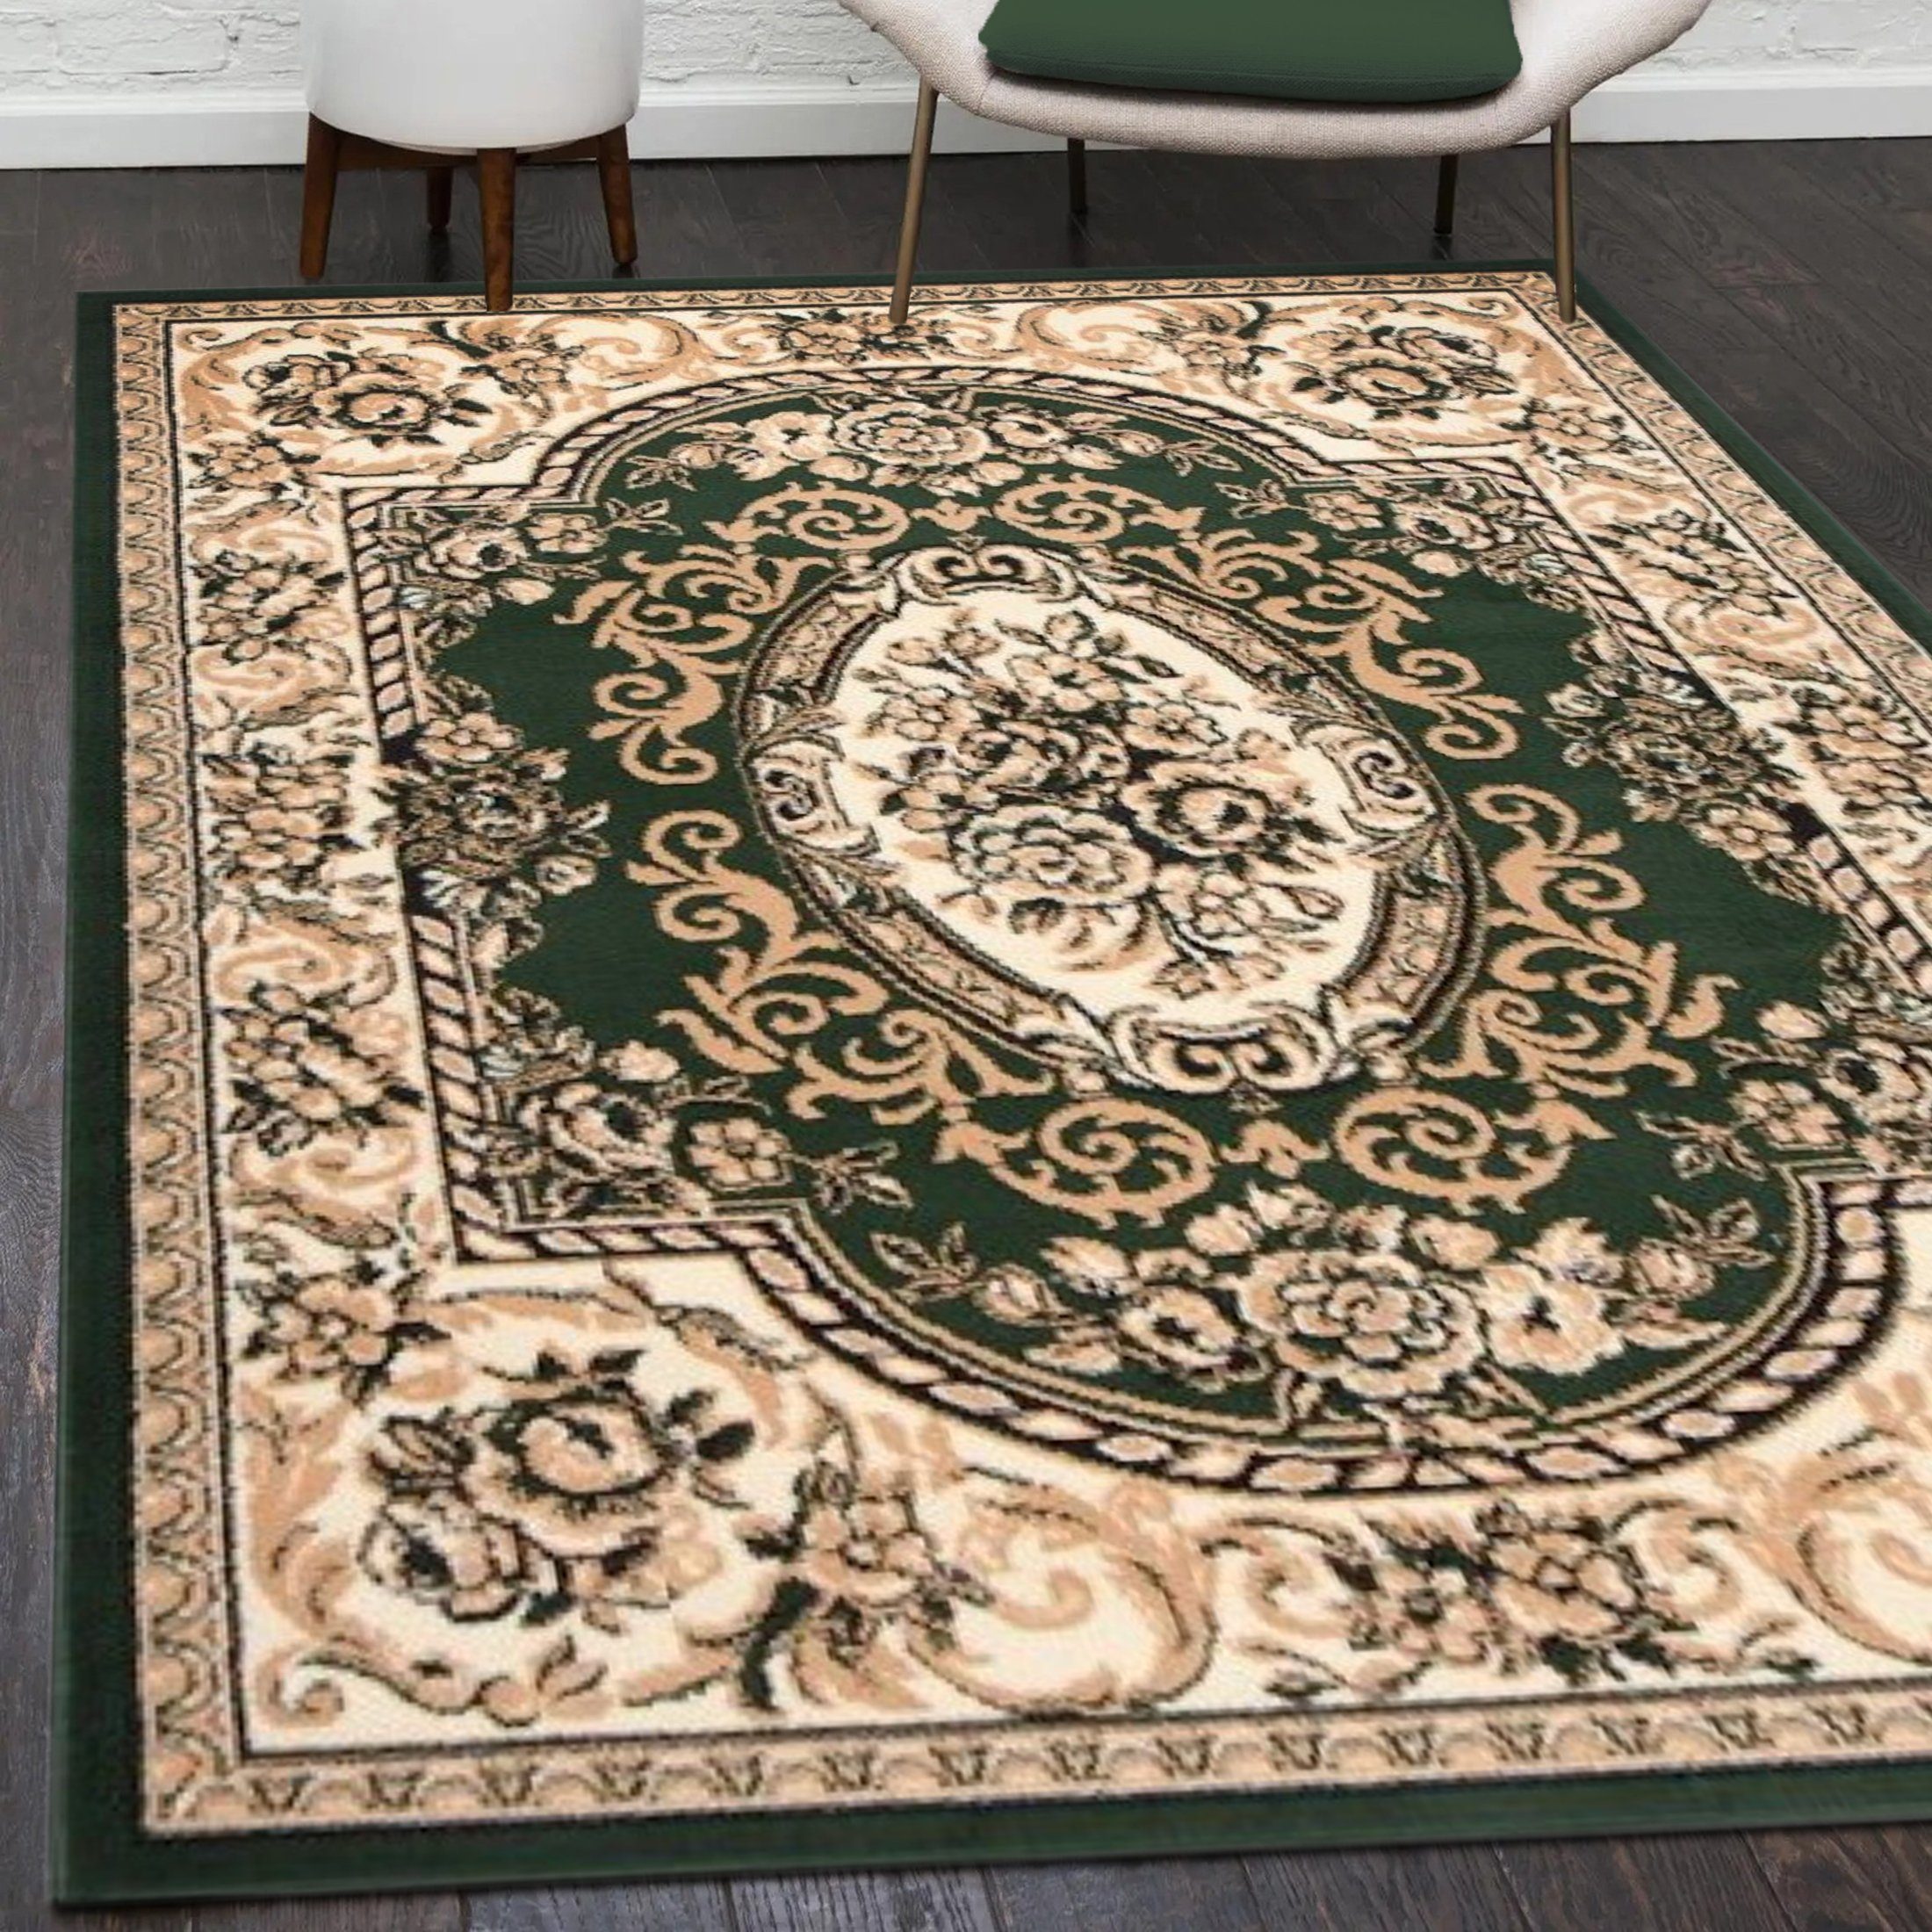 Orientteppich Orientalisch Vintage Teppich Kurzflor Wohnzimmerteppich Grün, Mazovia, 60 x 100 cm, Fußbodenheizung, Allergiker geeignet, Farbecht, Pflegeleicht